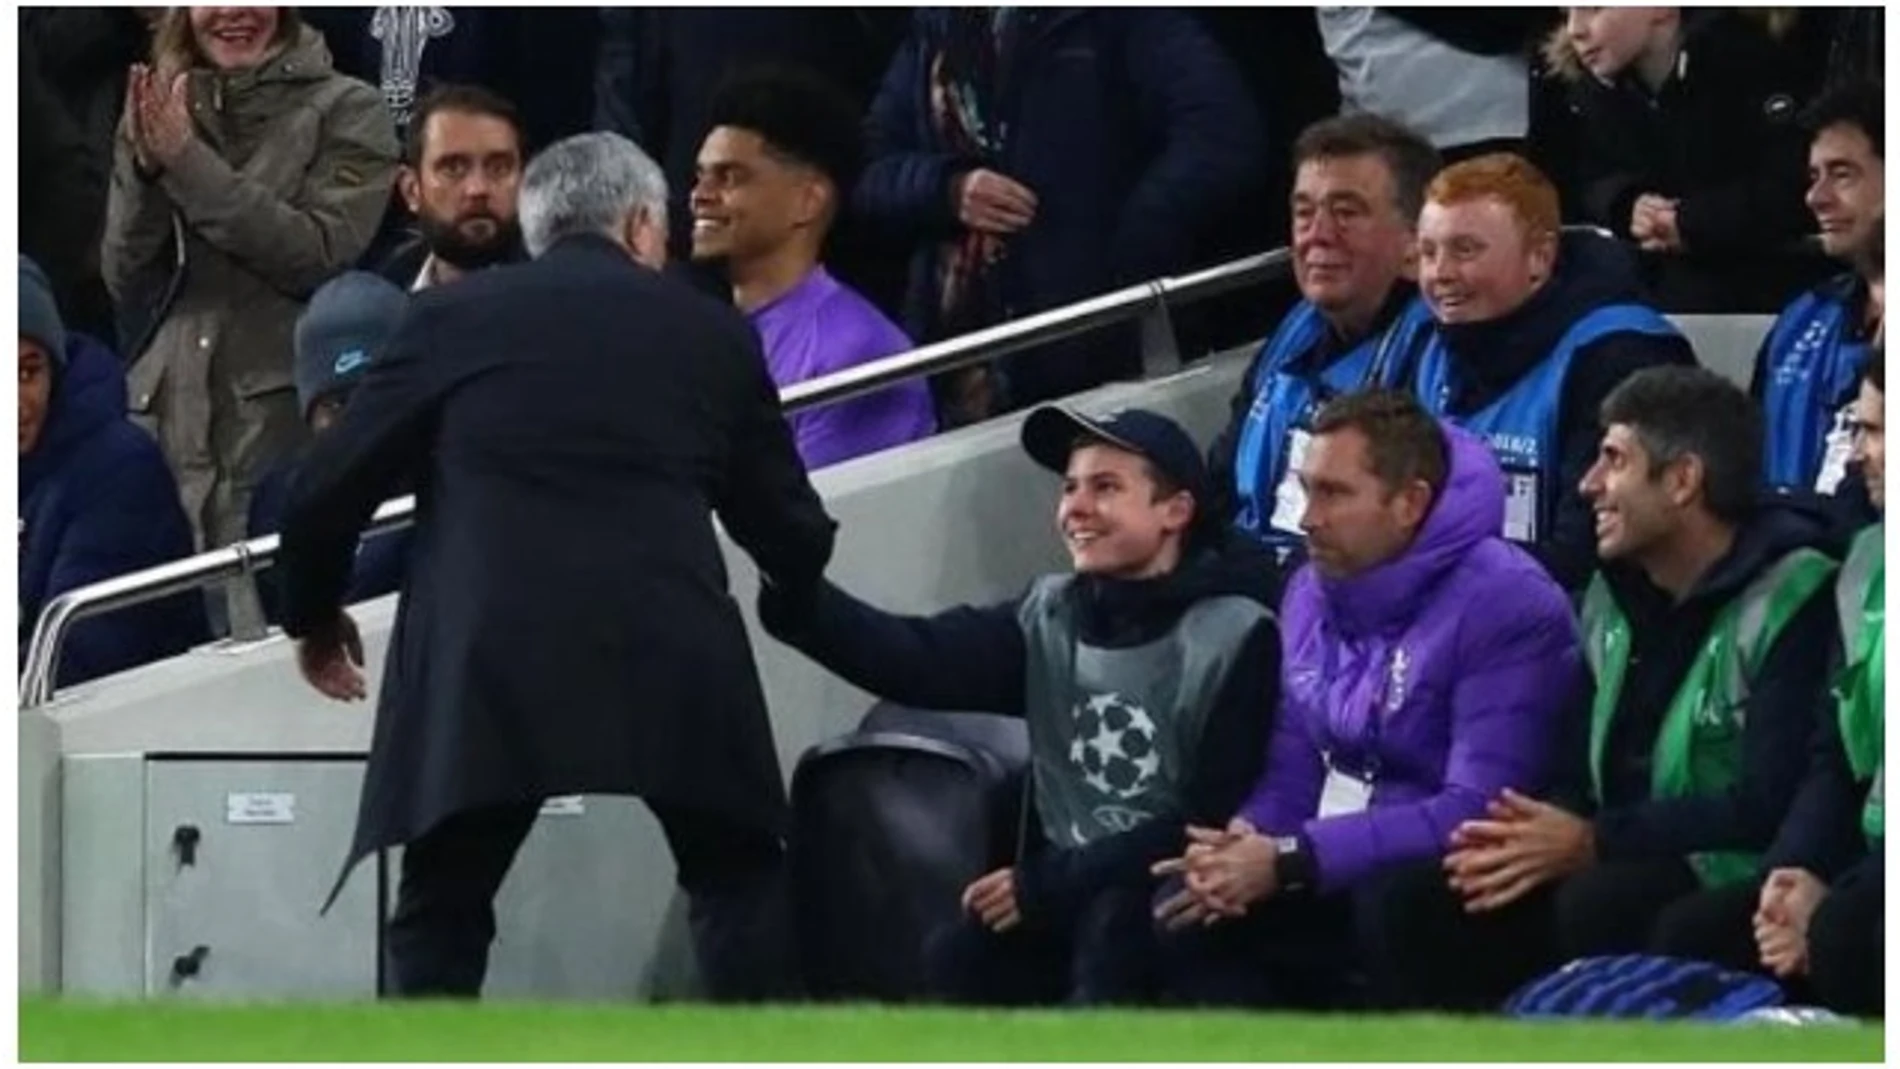 Mourinho saluda al recogepelotas que le ayudó a remontar